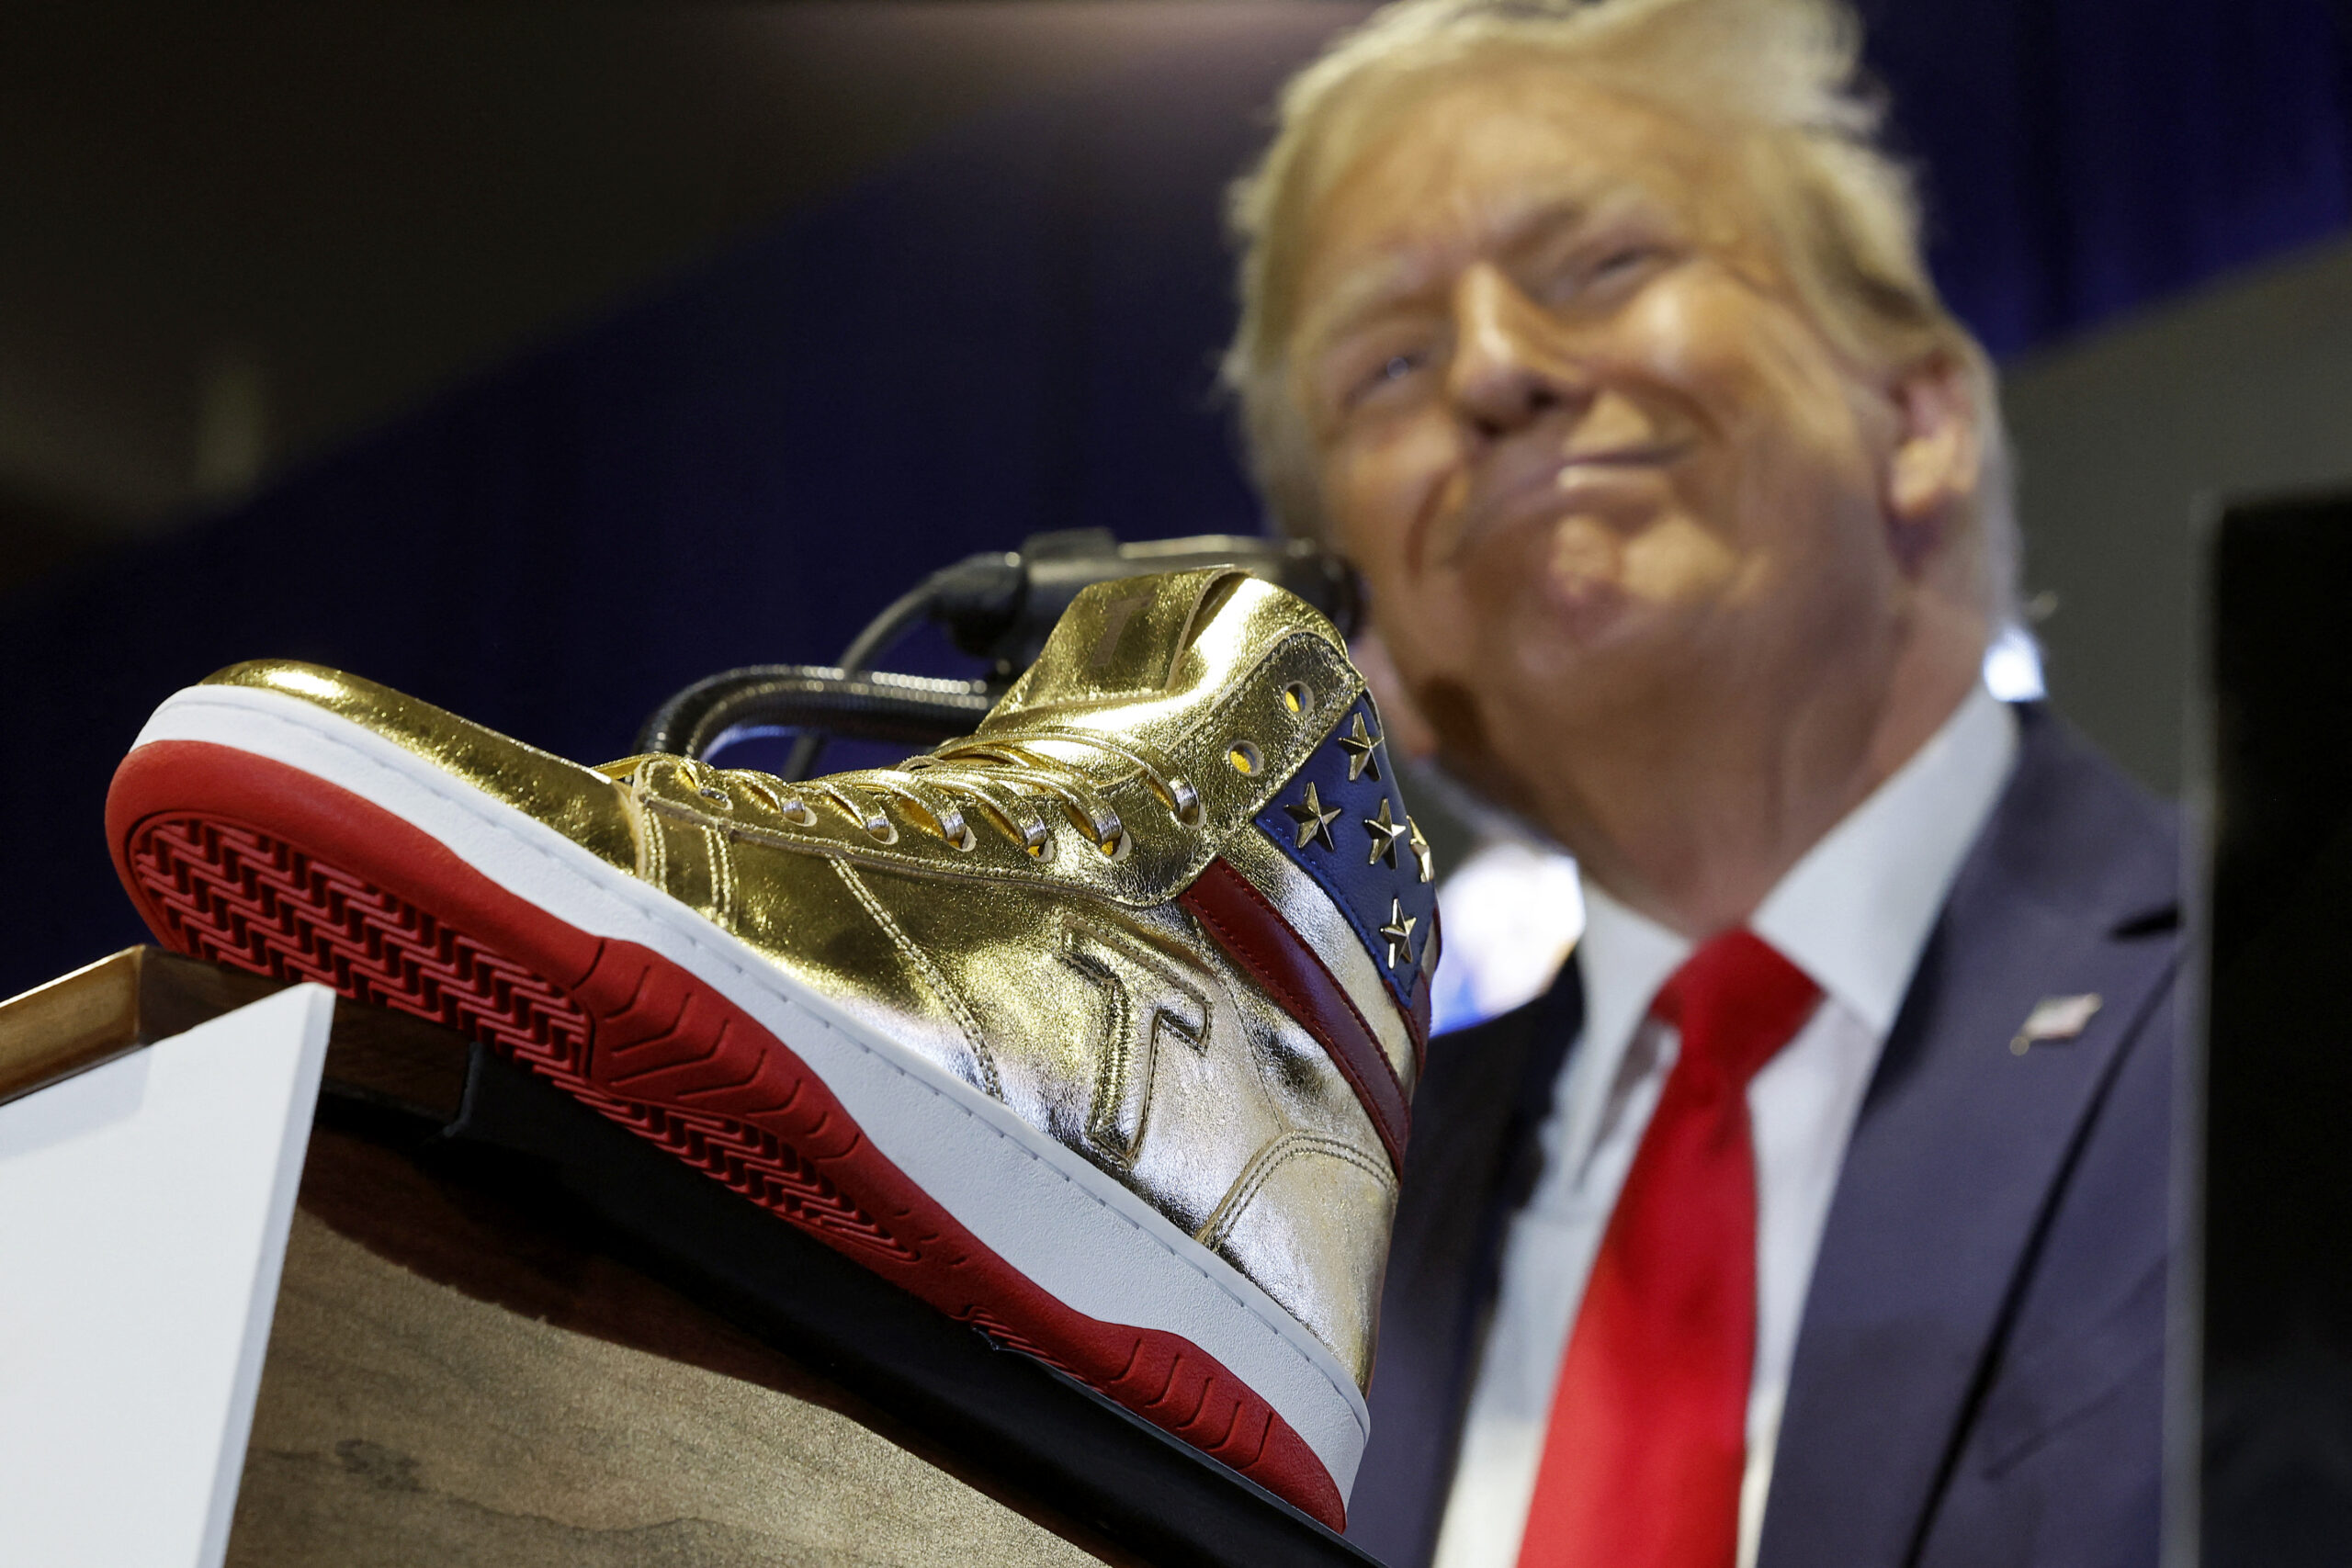 Donald Trump naglunsad ng sapatos